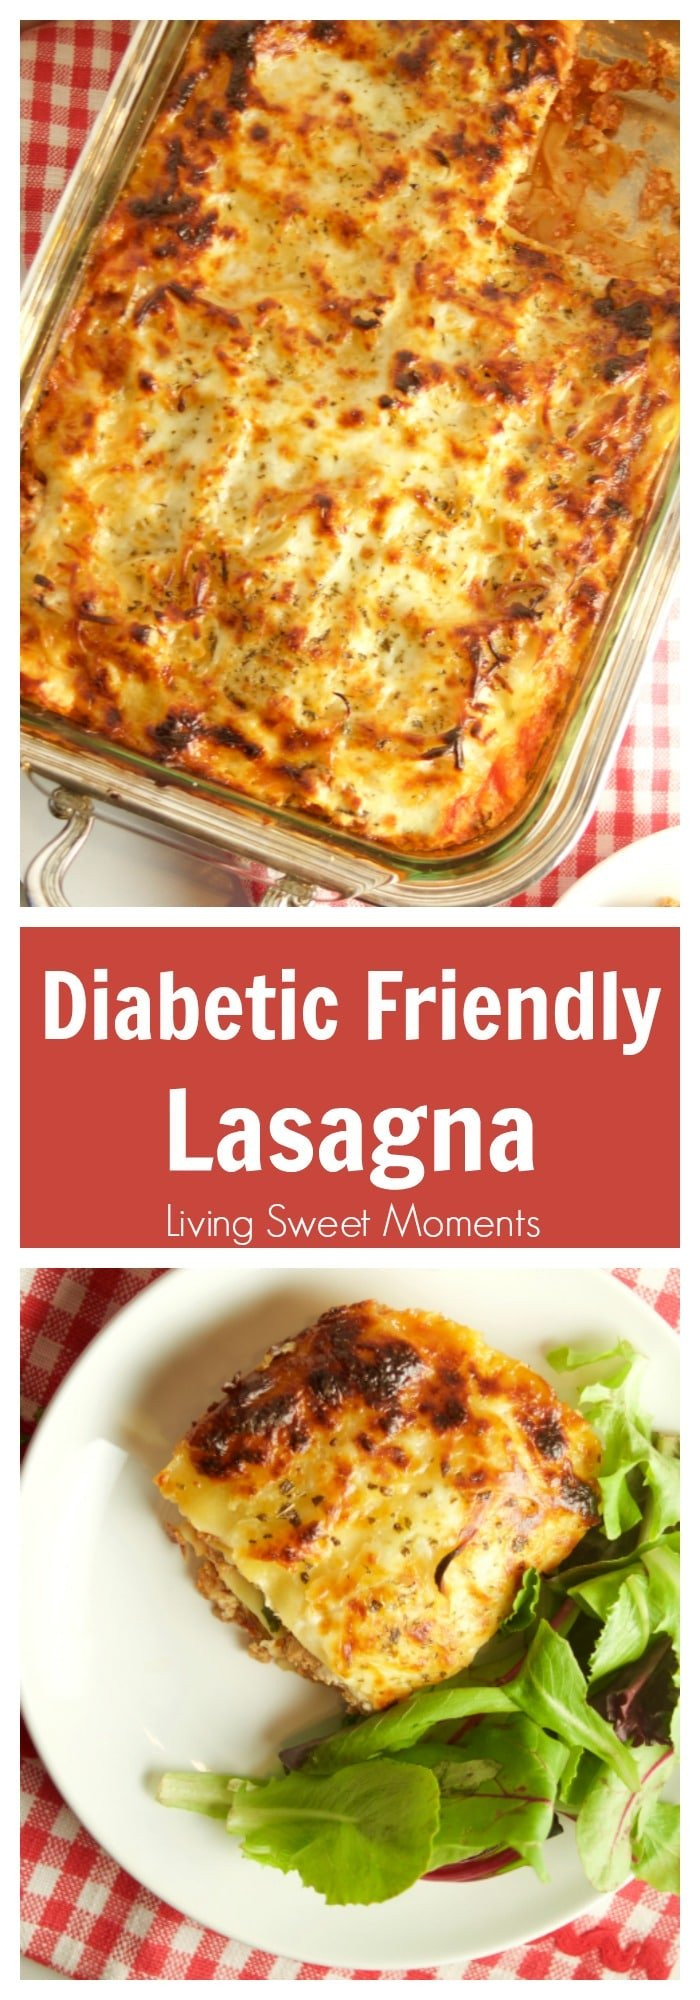 Diabetic Healthy Recipes
 Diabetic Lasagna Recipe Living Sweet Moments